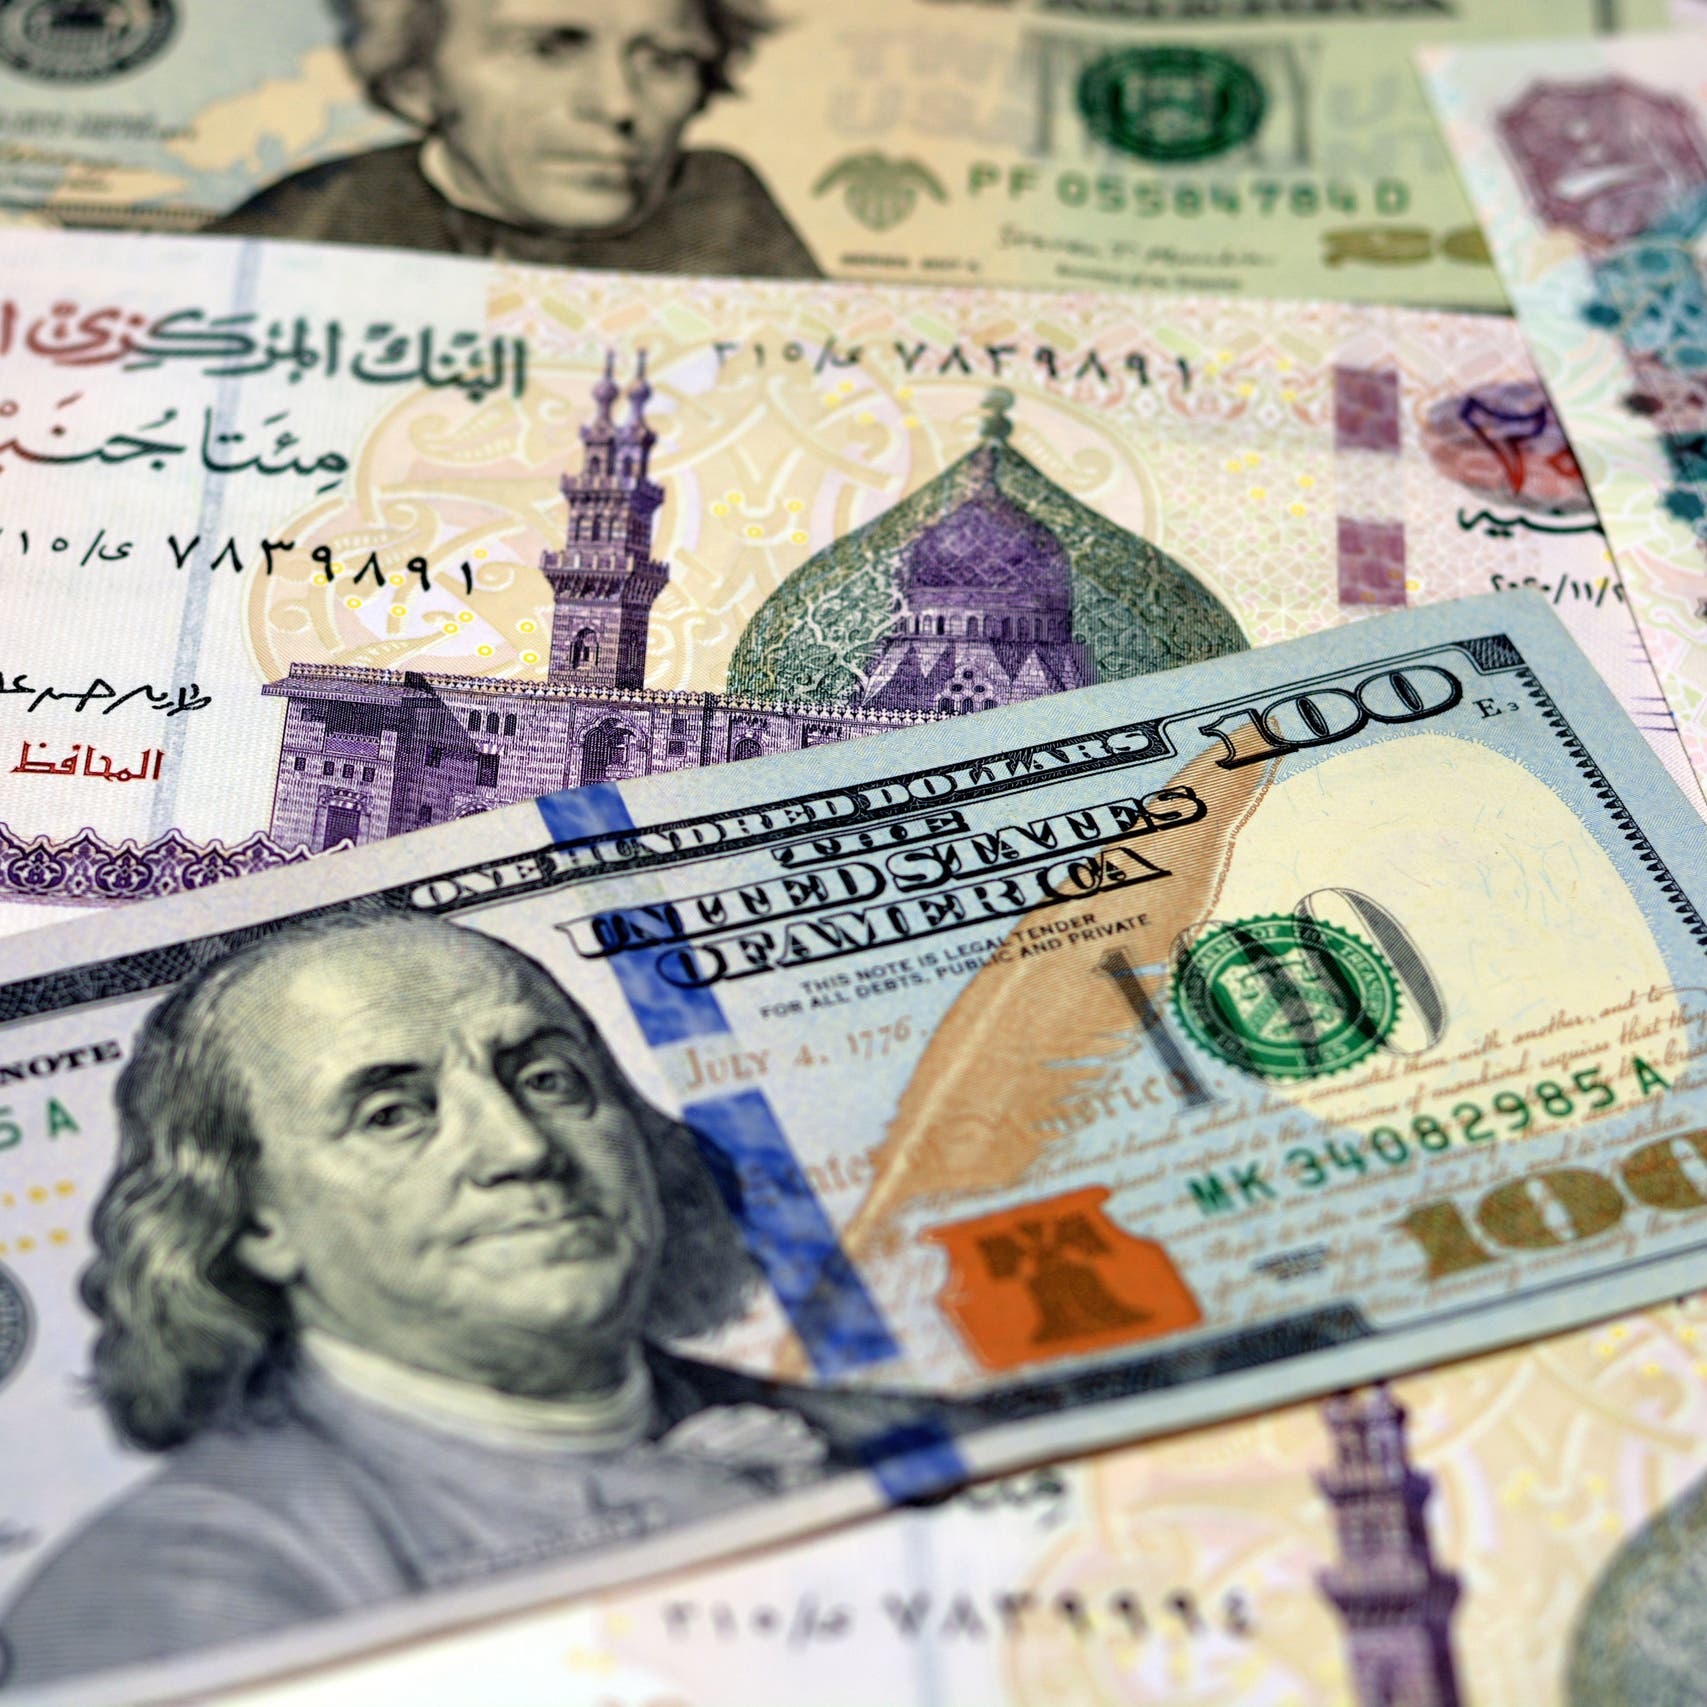 سعر الدولار في مصر يسجل مستوى قياسياً جديداً.. تجاوز 19 جنيهاً لأول مرة